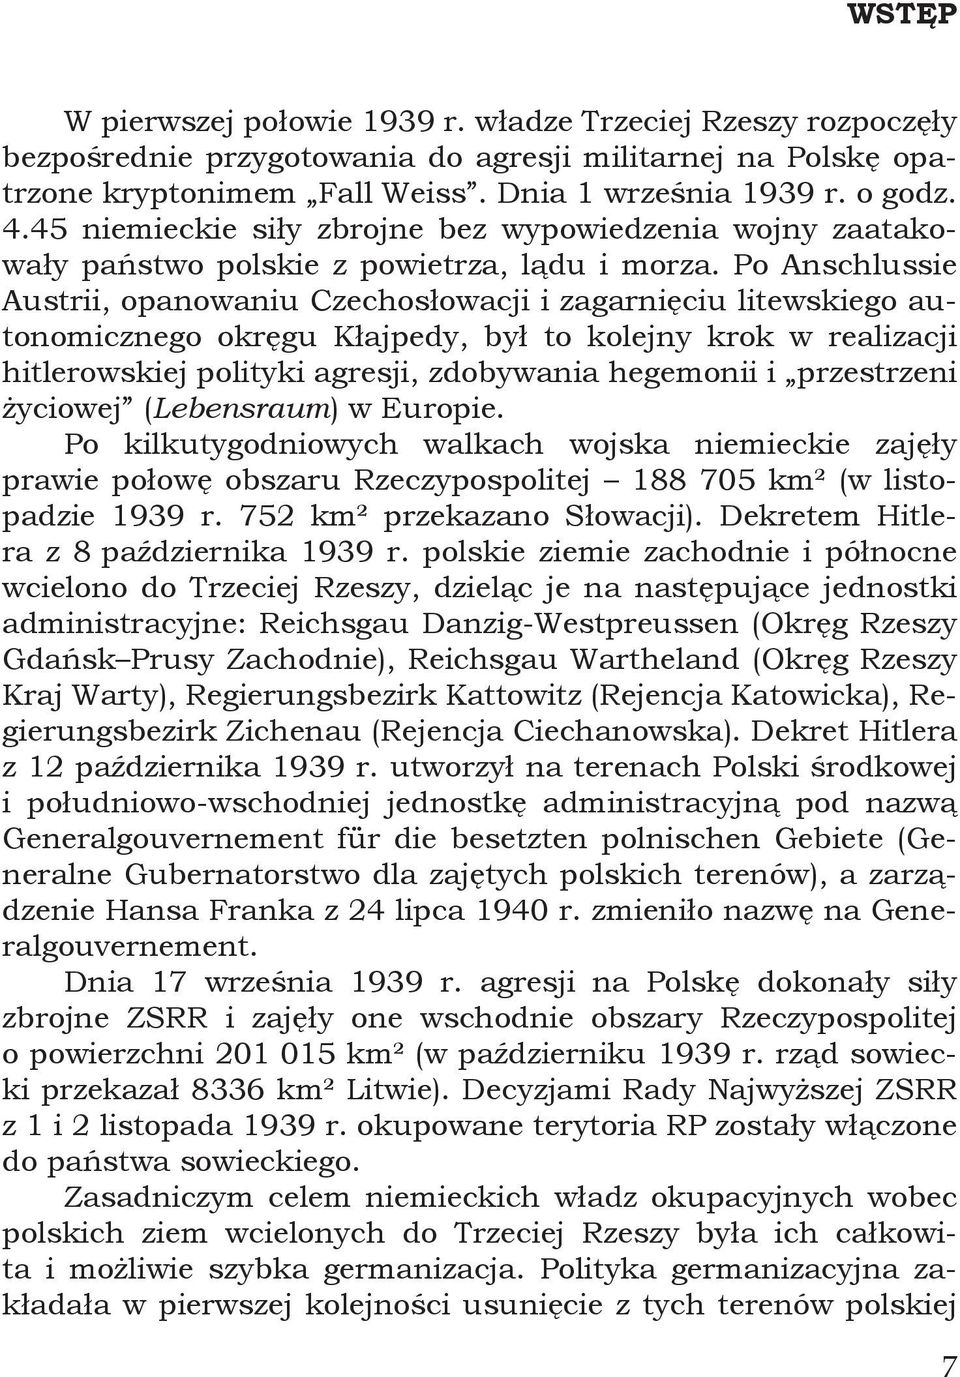 Po Anschlussie Austrii, opanowaniu Czechosłowacji i zagarnięciu litewskiego autonomicznego okręgu Kłajpedy, był to kolejny krok w realizacji hitlerowskiej polityki agresji, zdobywania hegemonii i